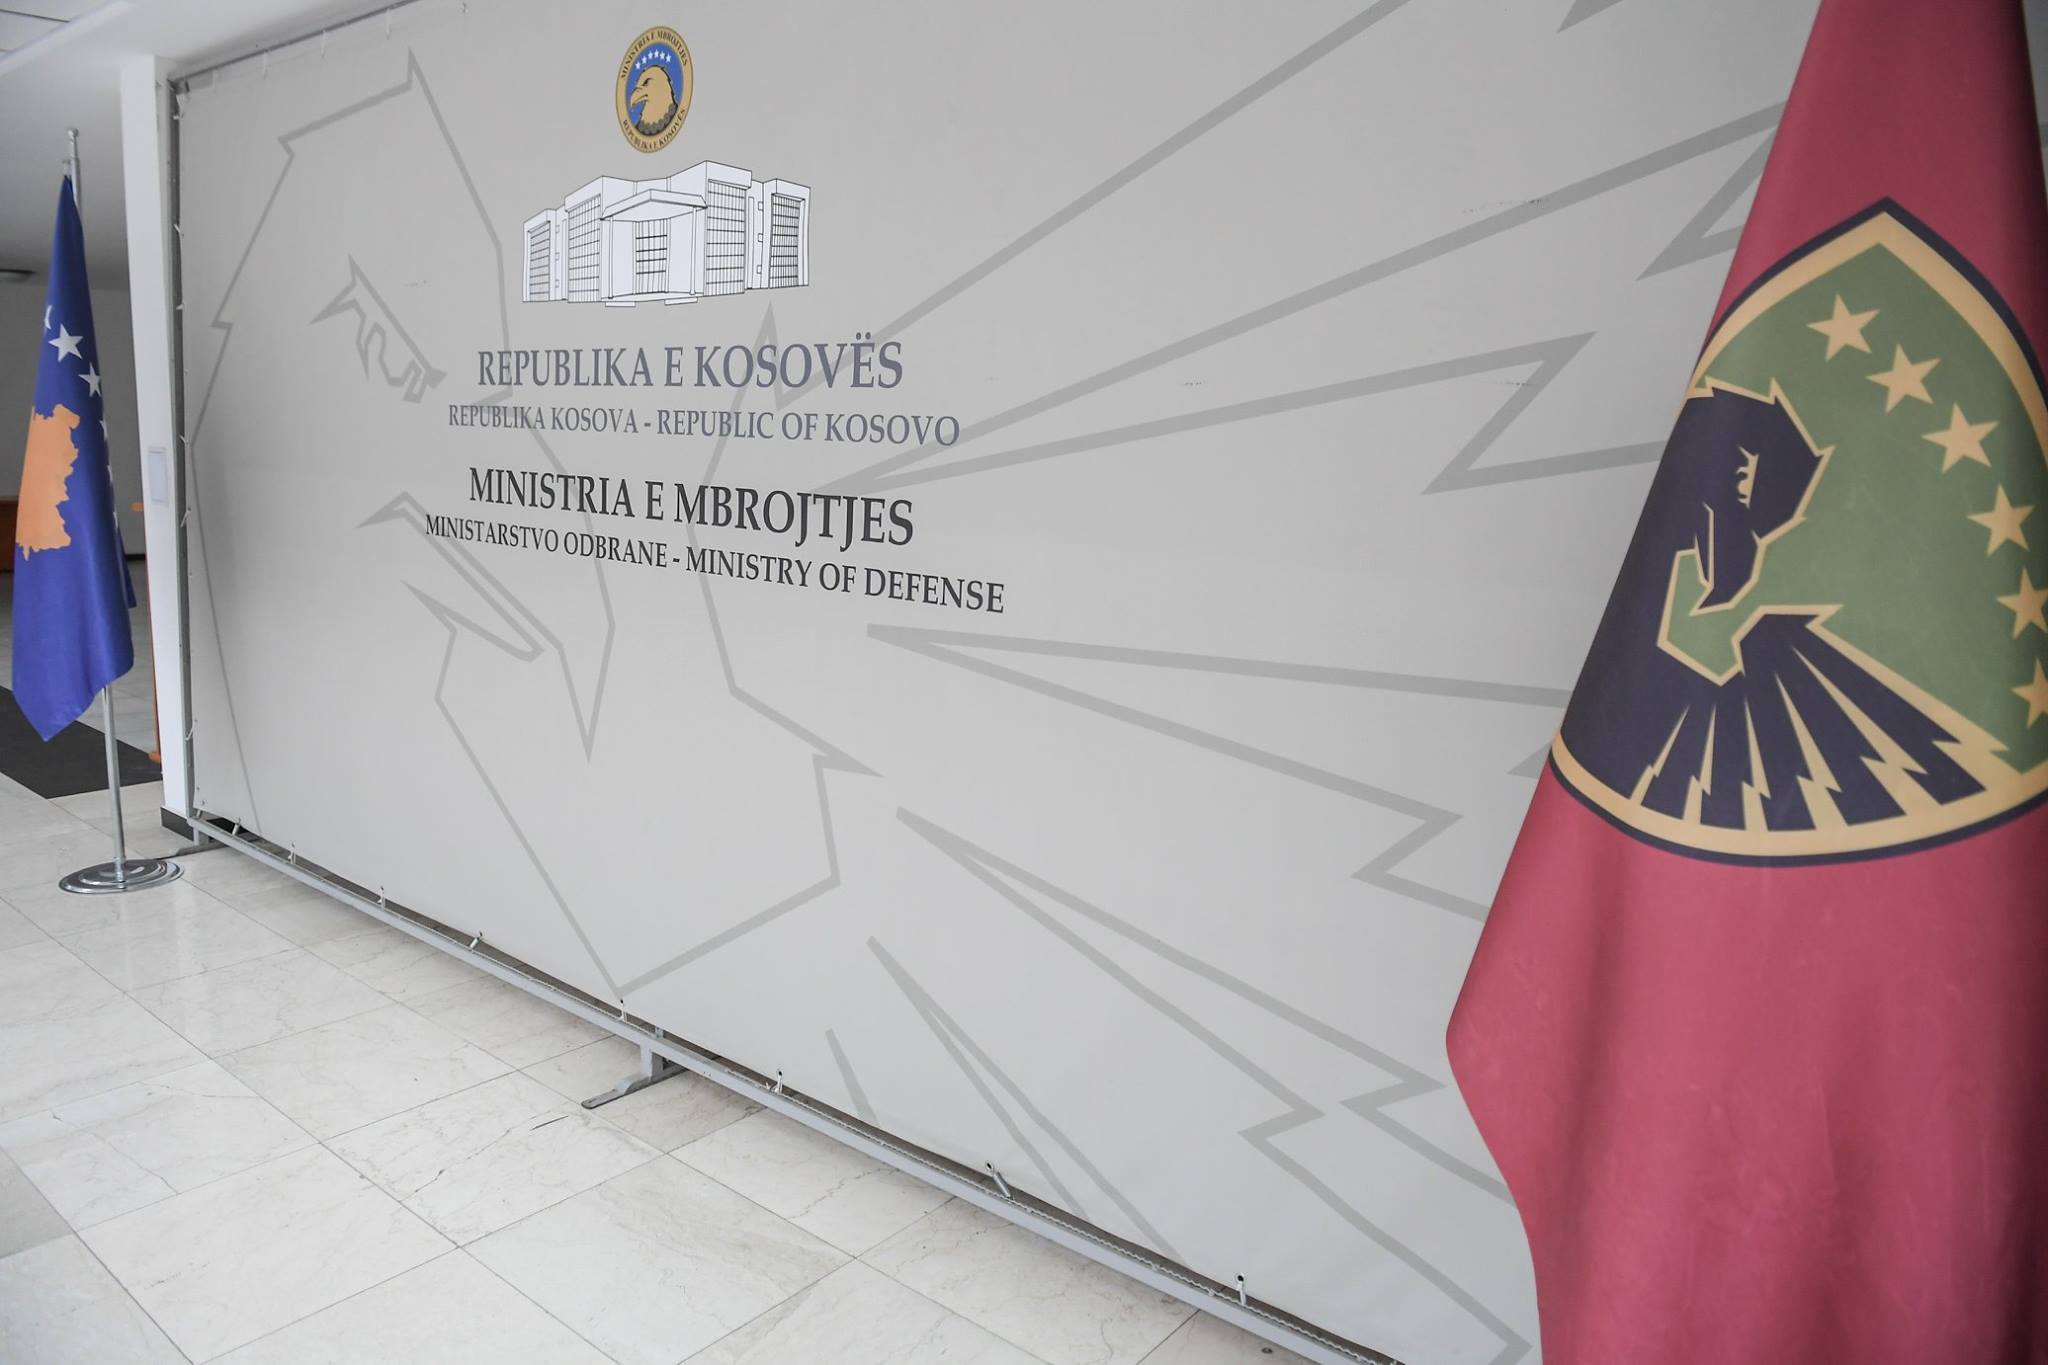 Zyrtarisht, filloi procesi i tranzicionit të FSK-së në Ushtri, ku u bë edhe zbulimi i pllakës “Ministria e Mbrotjes”